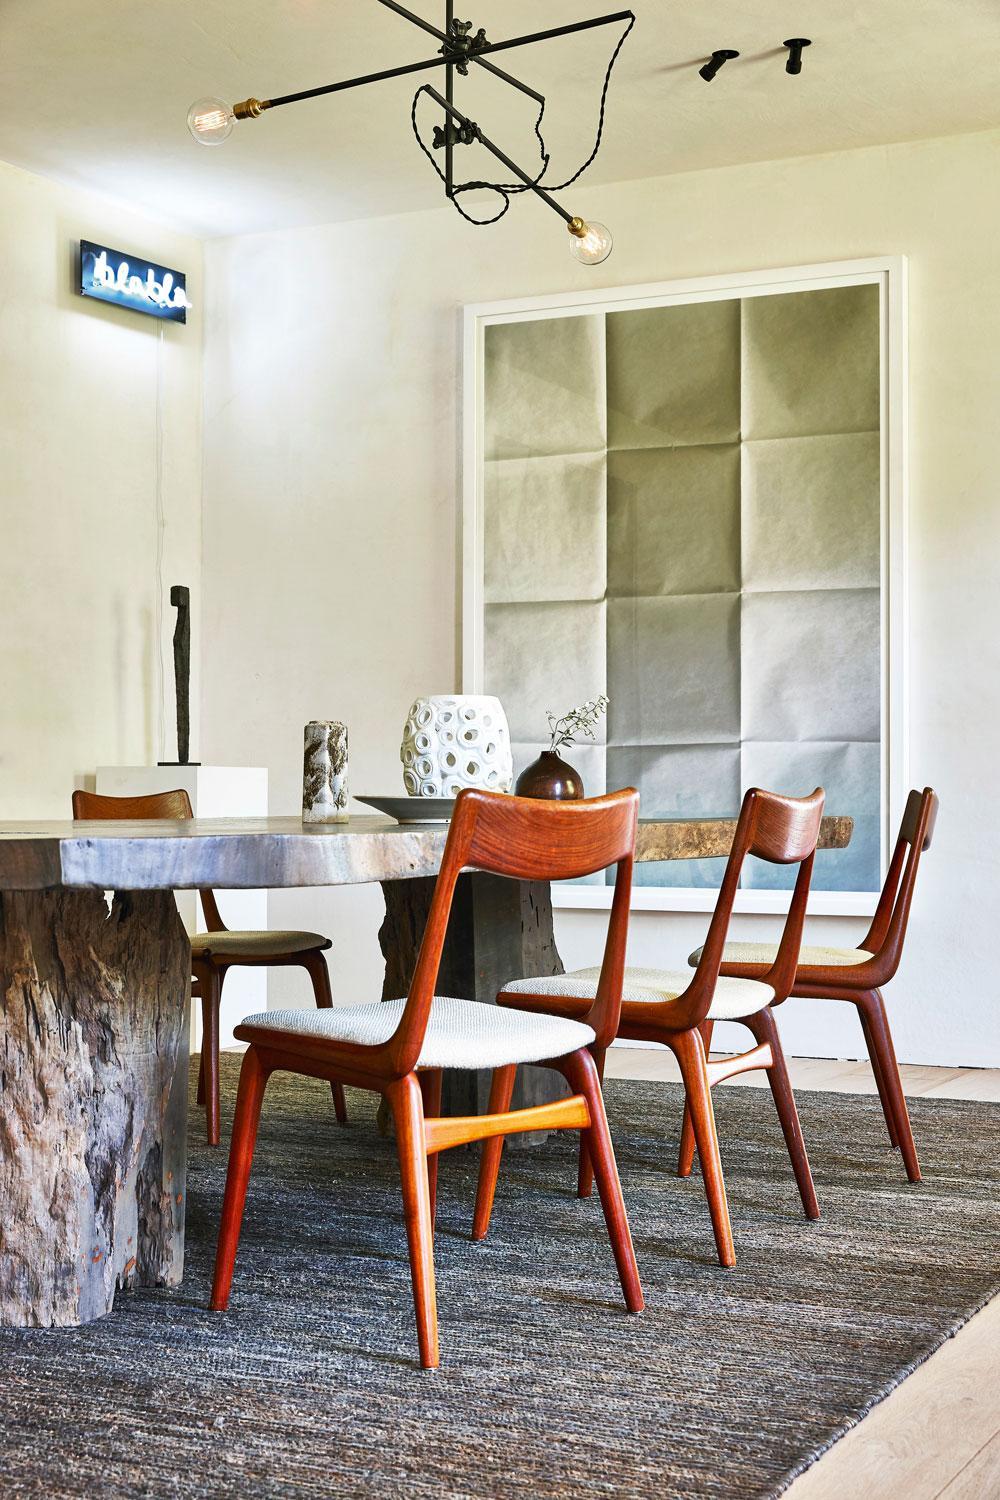 In de eetkamer staat een grote tafel van mahoniehout met daarrond Boomerang Chairs van Eric Christensen. Het kunstwerk Blabla is van Delphine Boël, het papieren werk van Leon Vranken.